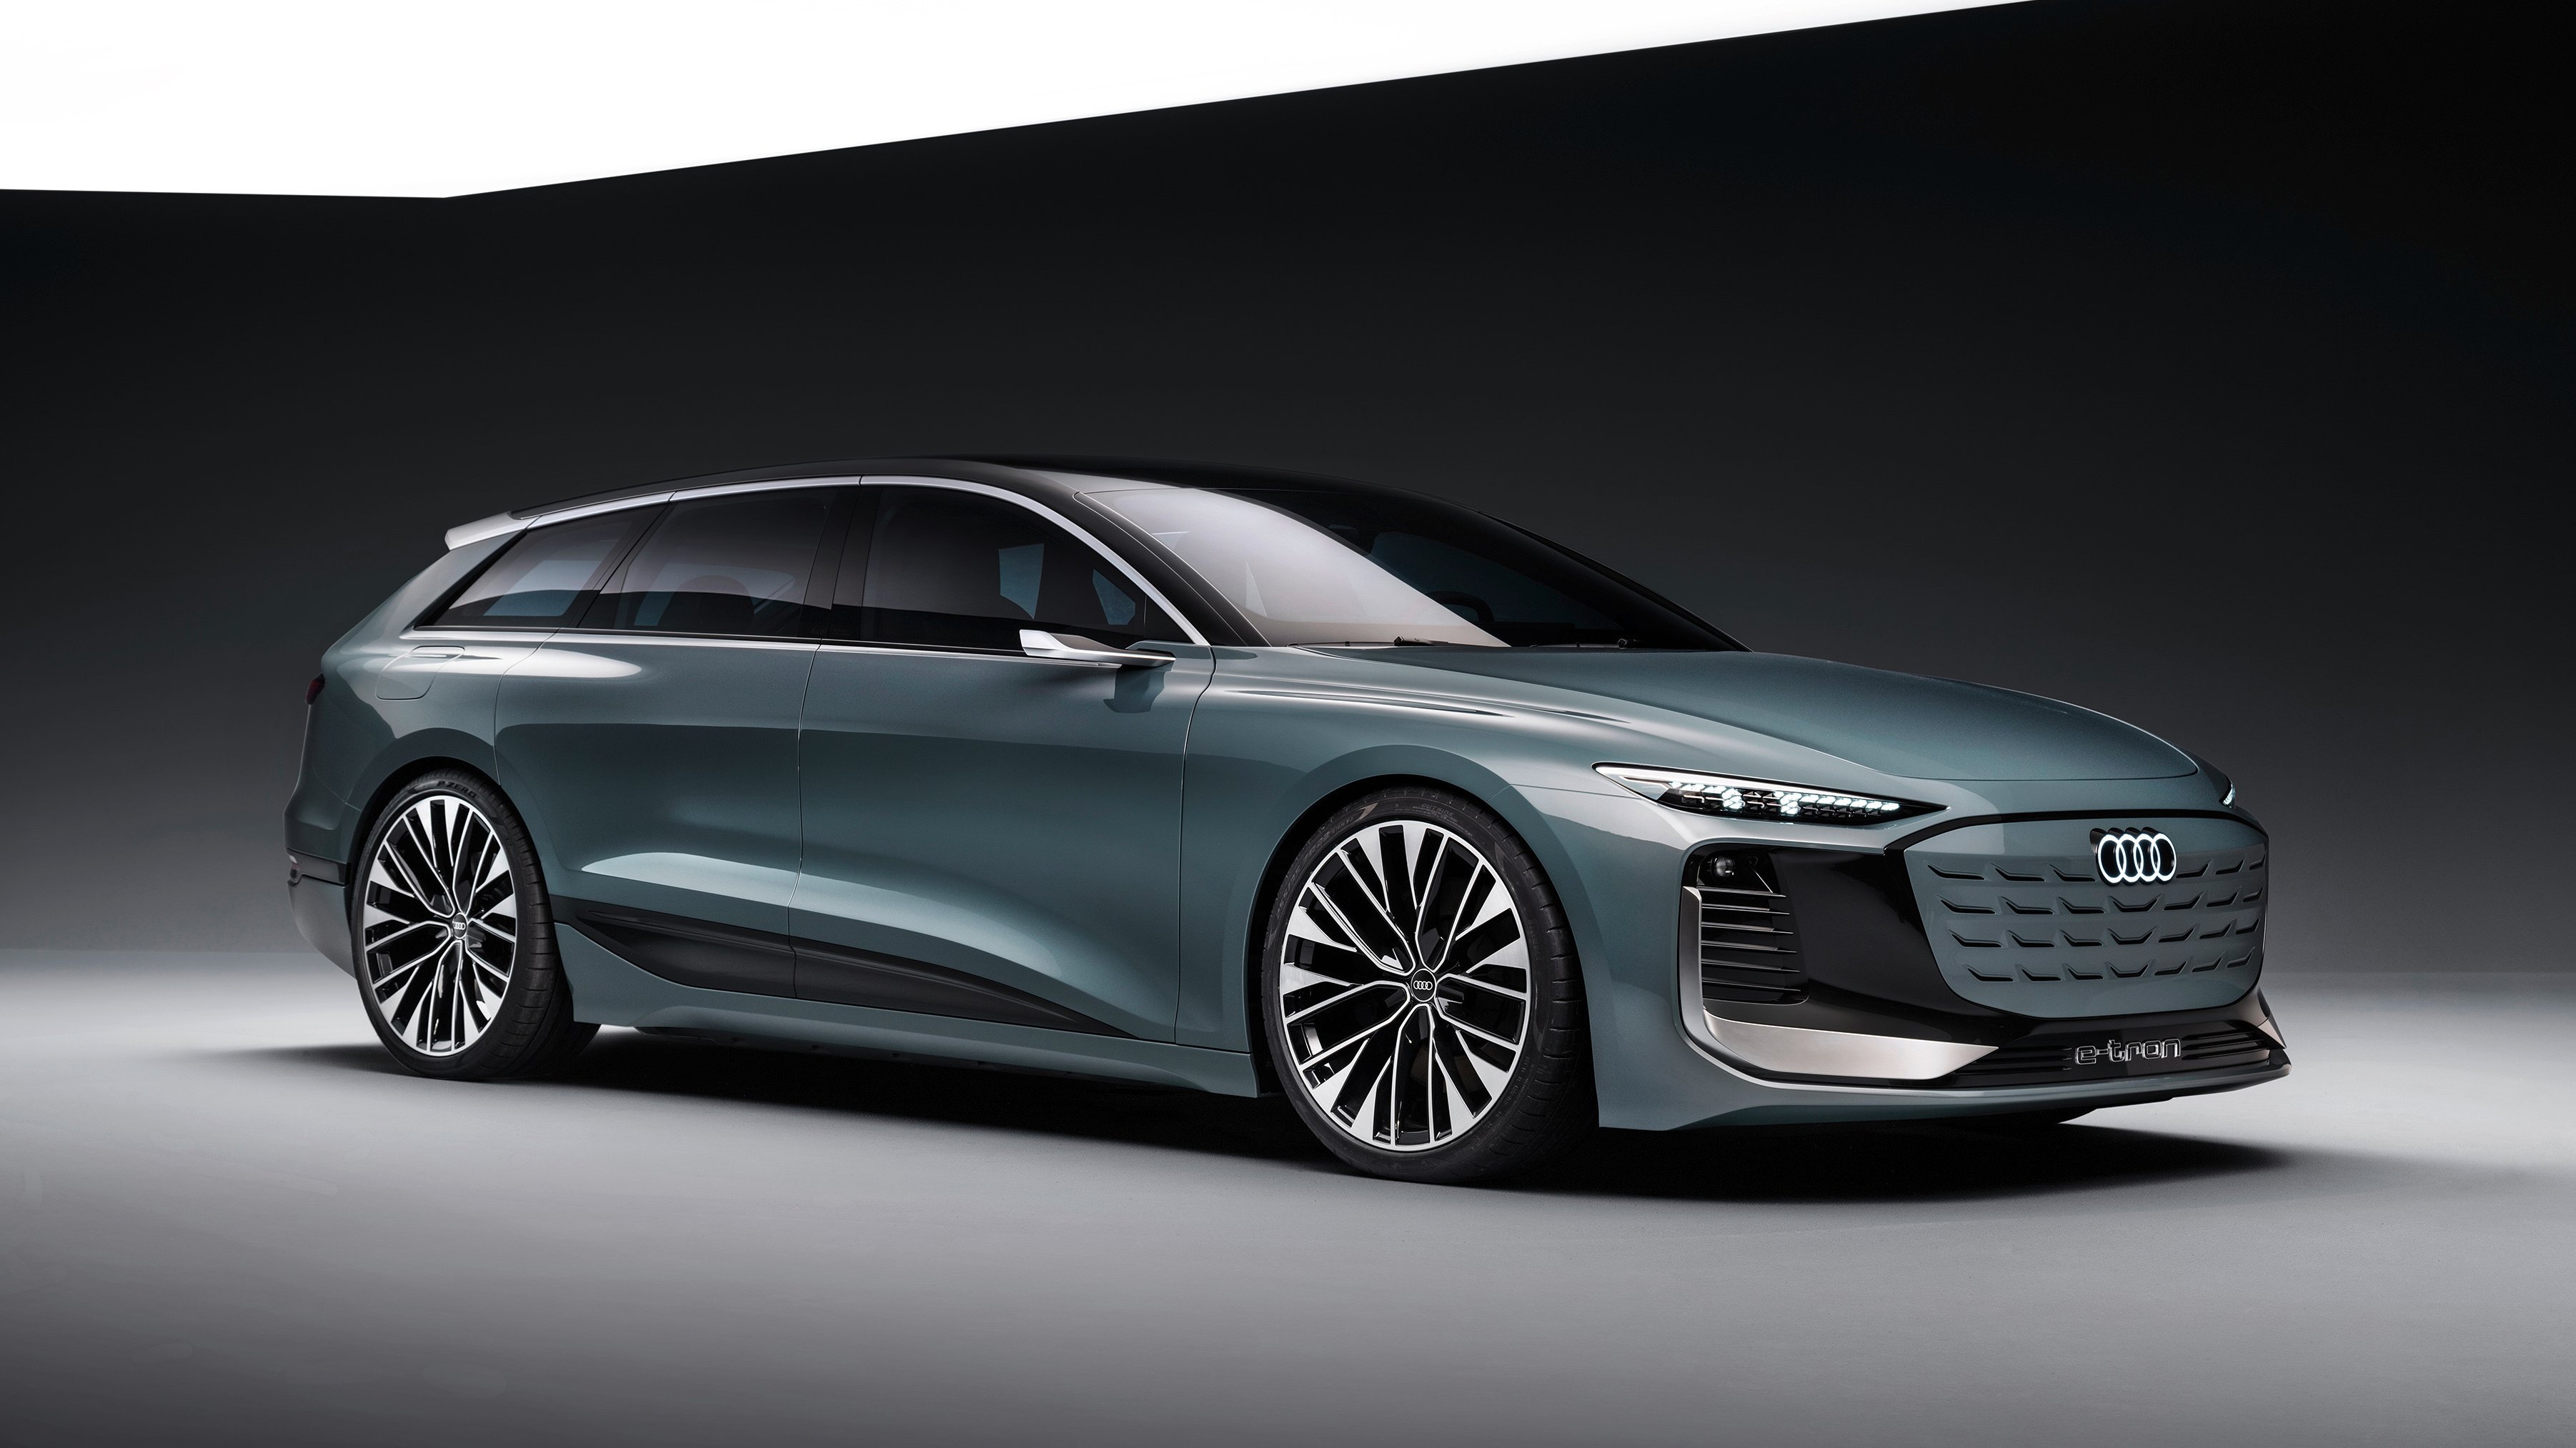 Audi presenta el A6 Avant etron concept